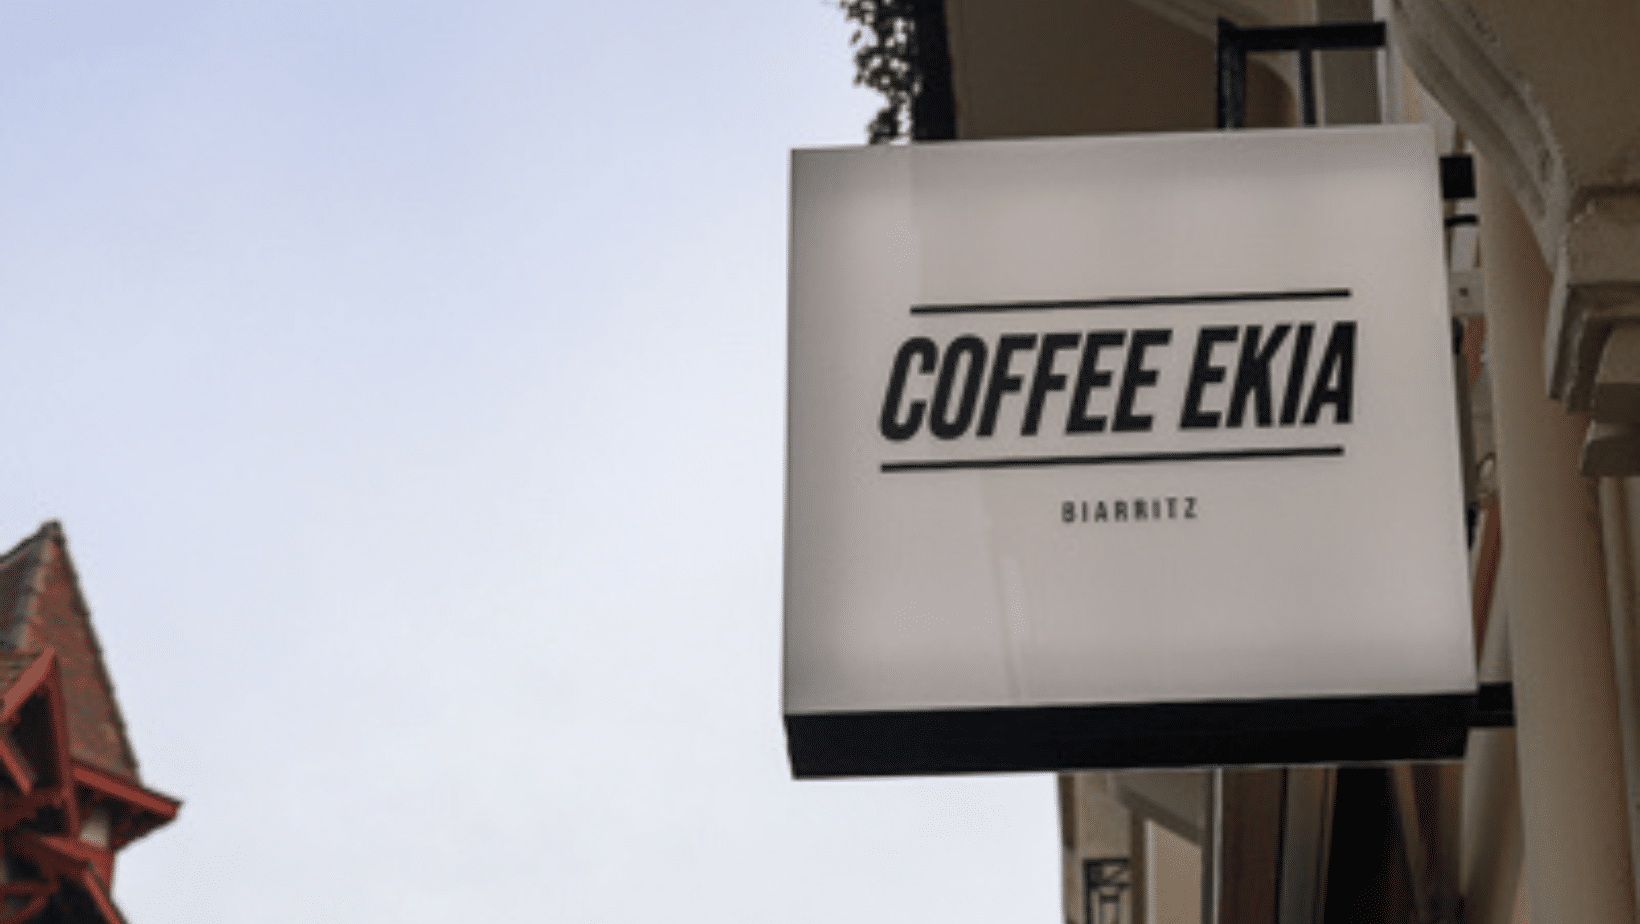 Coffee Ekia à Biarritz – la véritable pause café